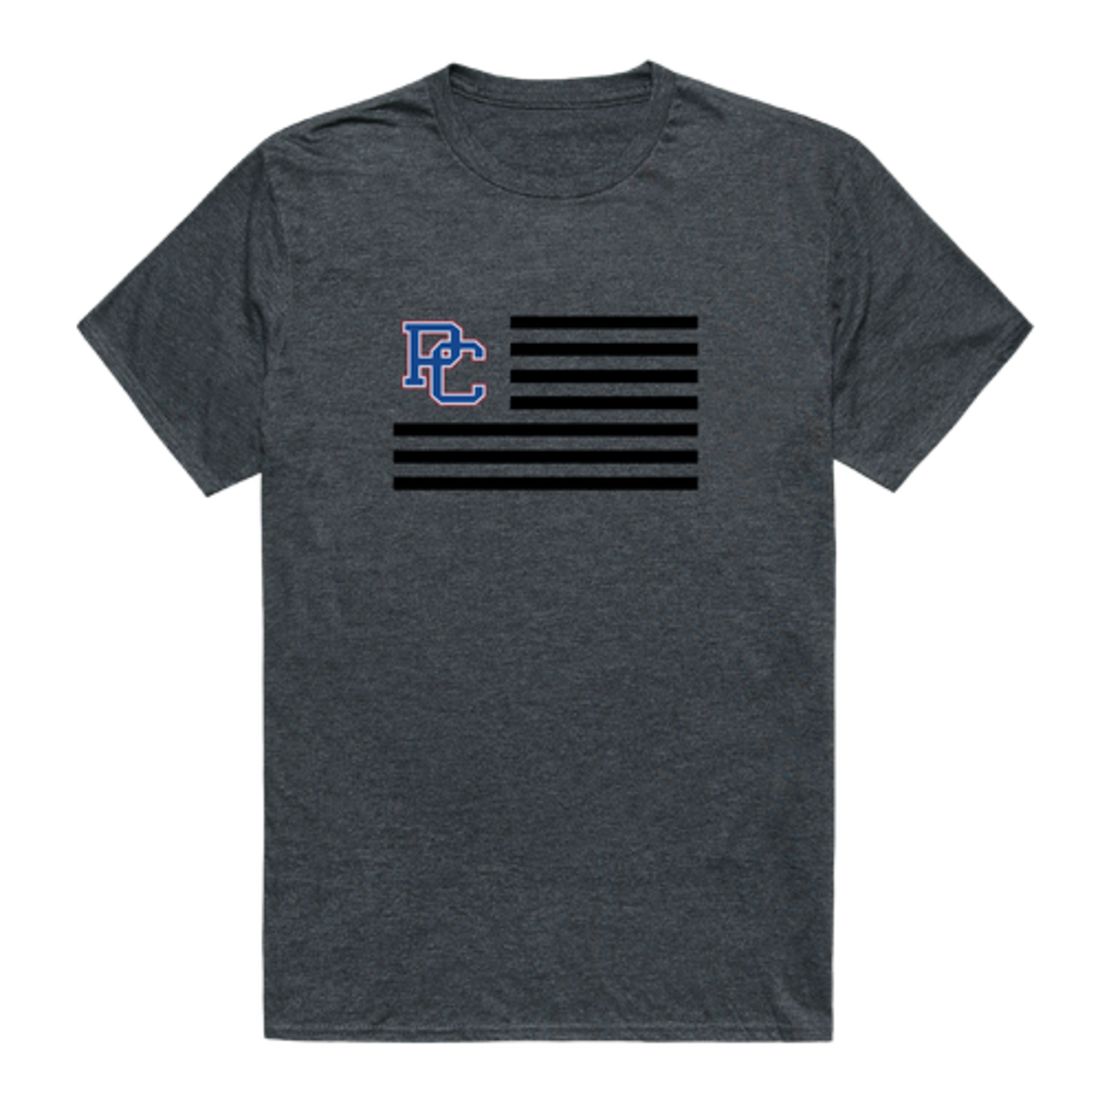 Presbyterian College Blue Hose USA Flag T-Shirt Tee